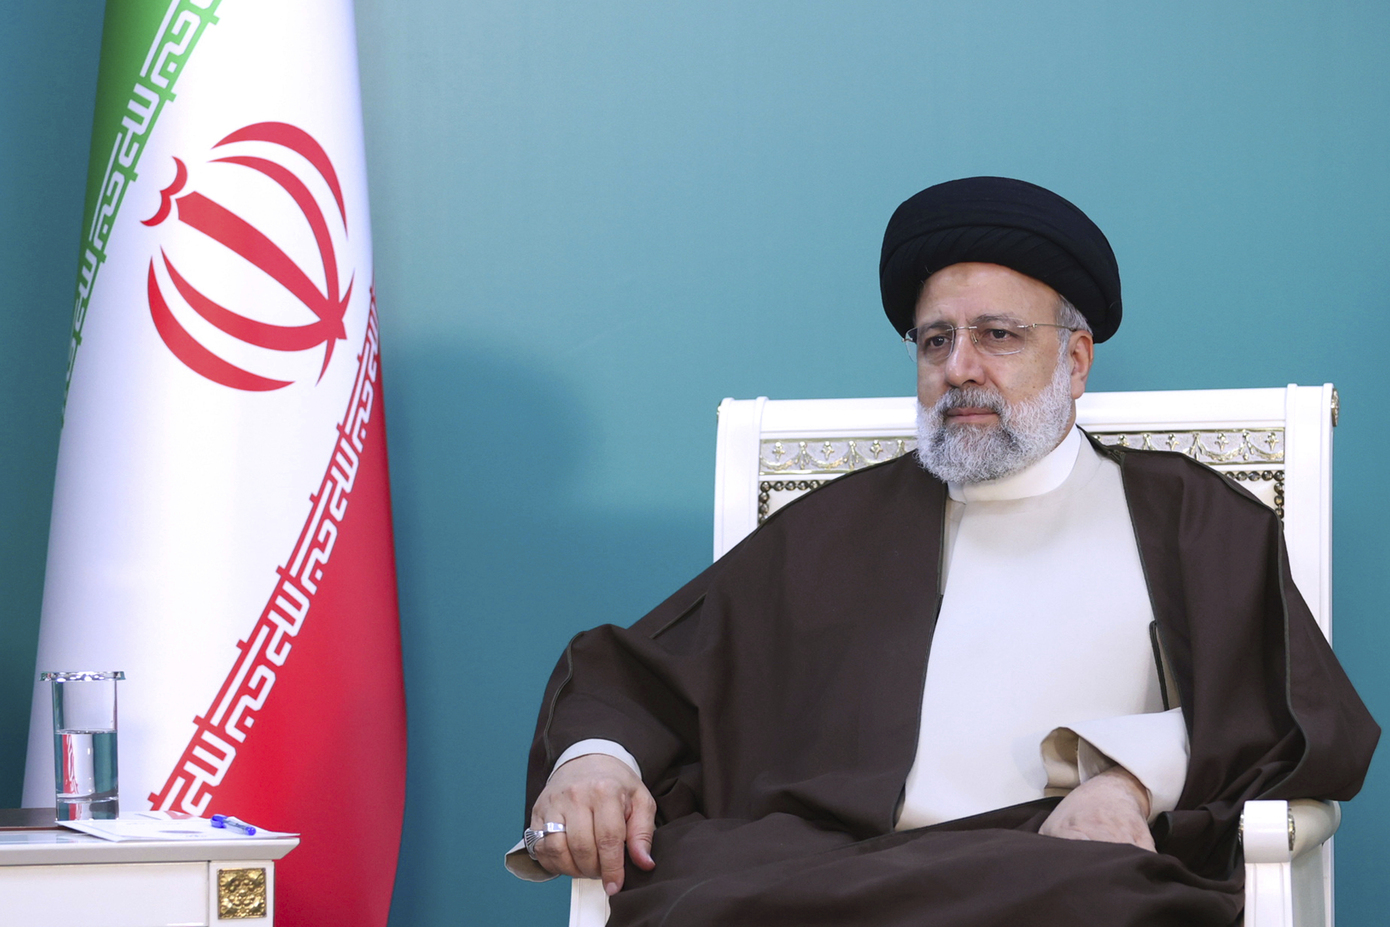 Ο θάνατος του Ραϊσί «μνημειώδες πλήγμα» για το ισλαμικό καθεστώς, λέει το Εθνικό Συμβούλιο Ιρανικής Αντίστασης